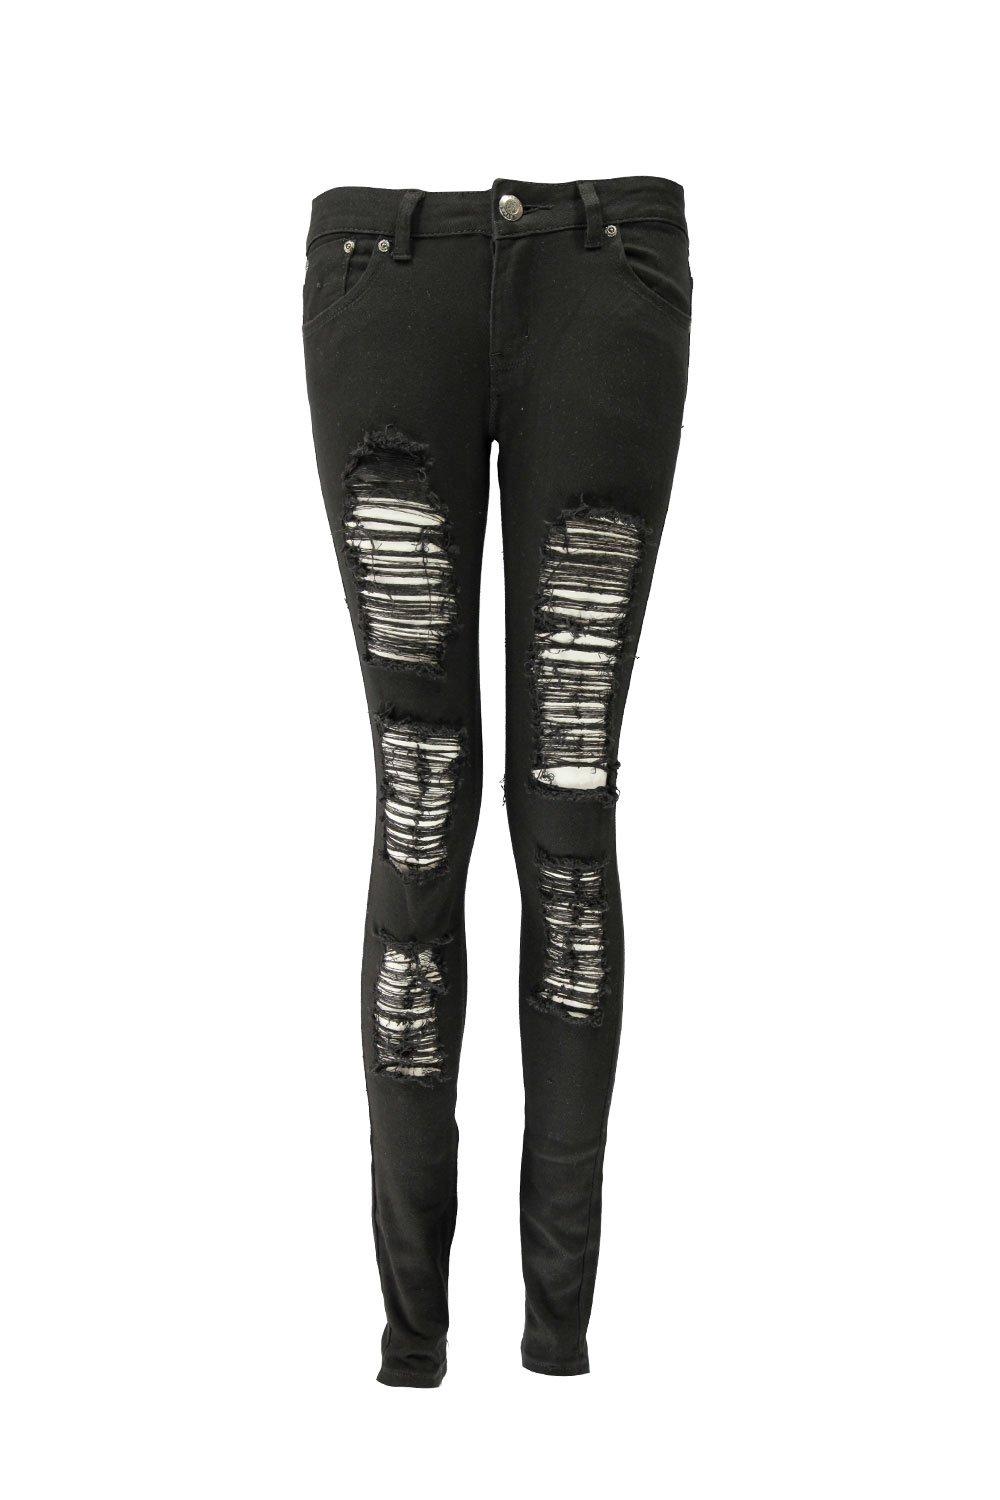 Boohoo Womens Jenny Ripped Skinny Jeans | eBay